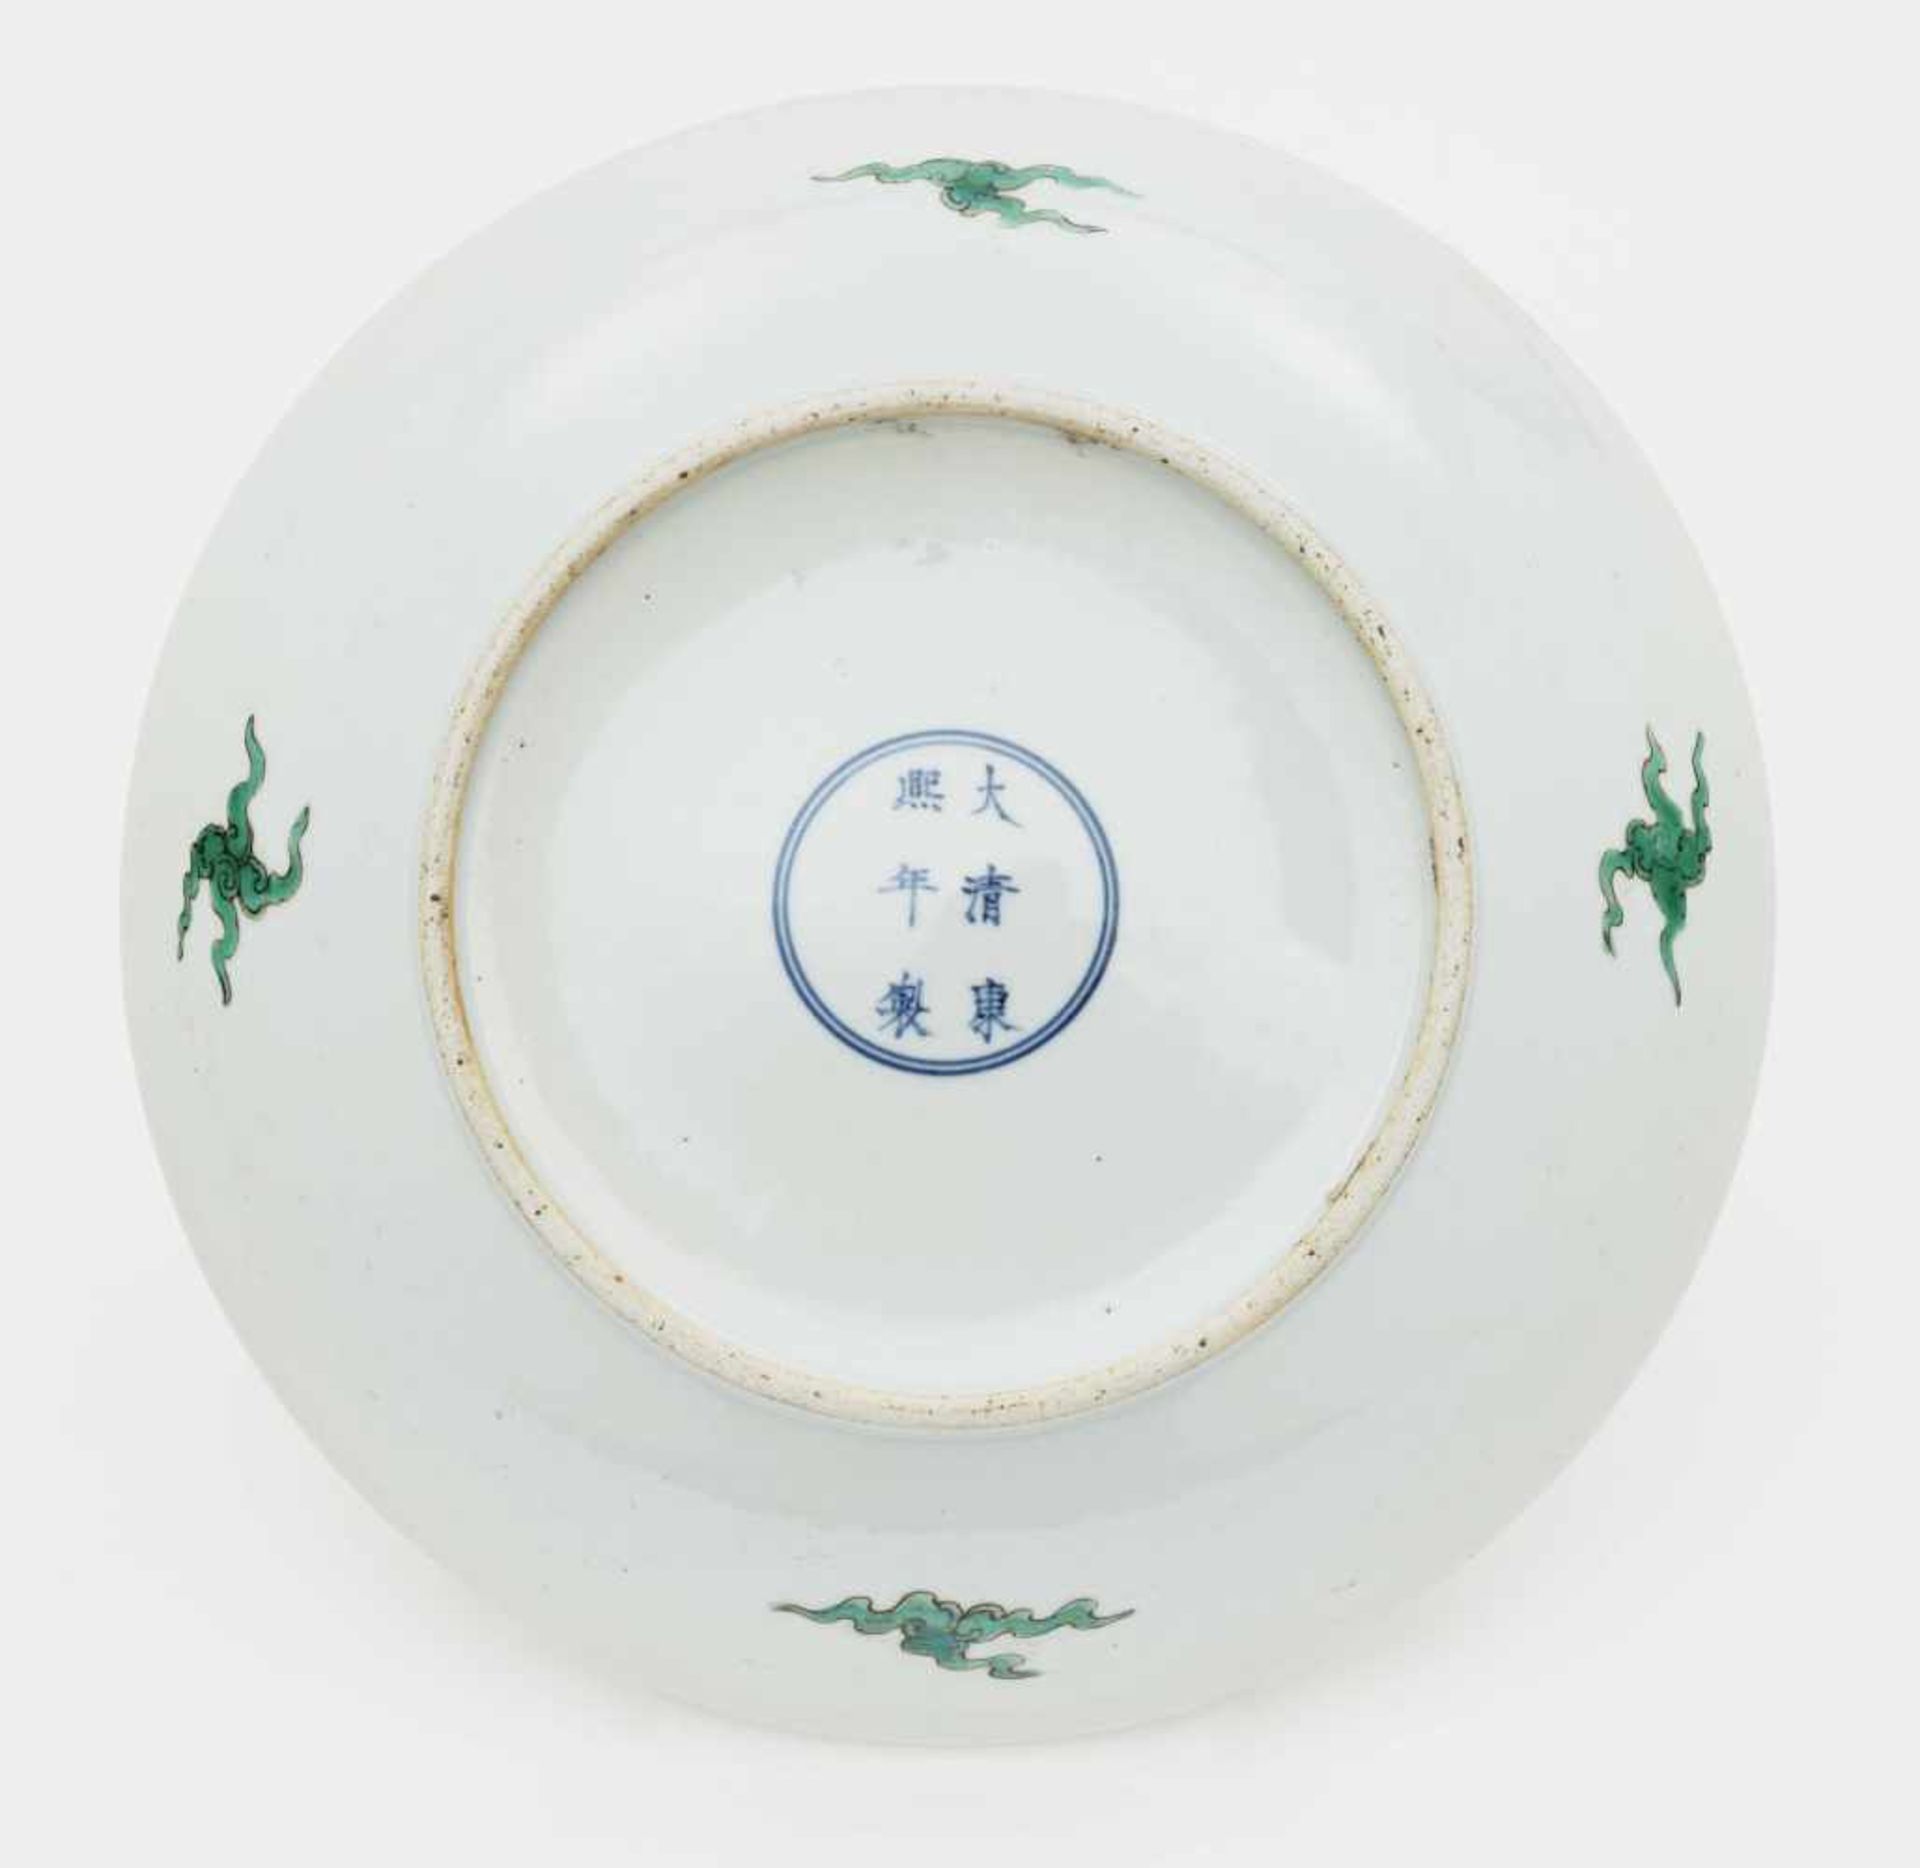 Schale China Porzellan. Bunter Drachendekor im Stil der "Famille verte". Blaue Sechszeichenmarke - Image 2 of 3